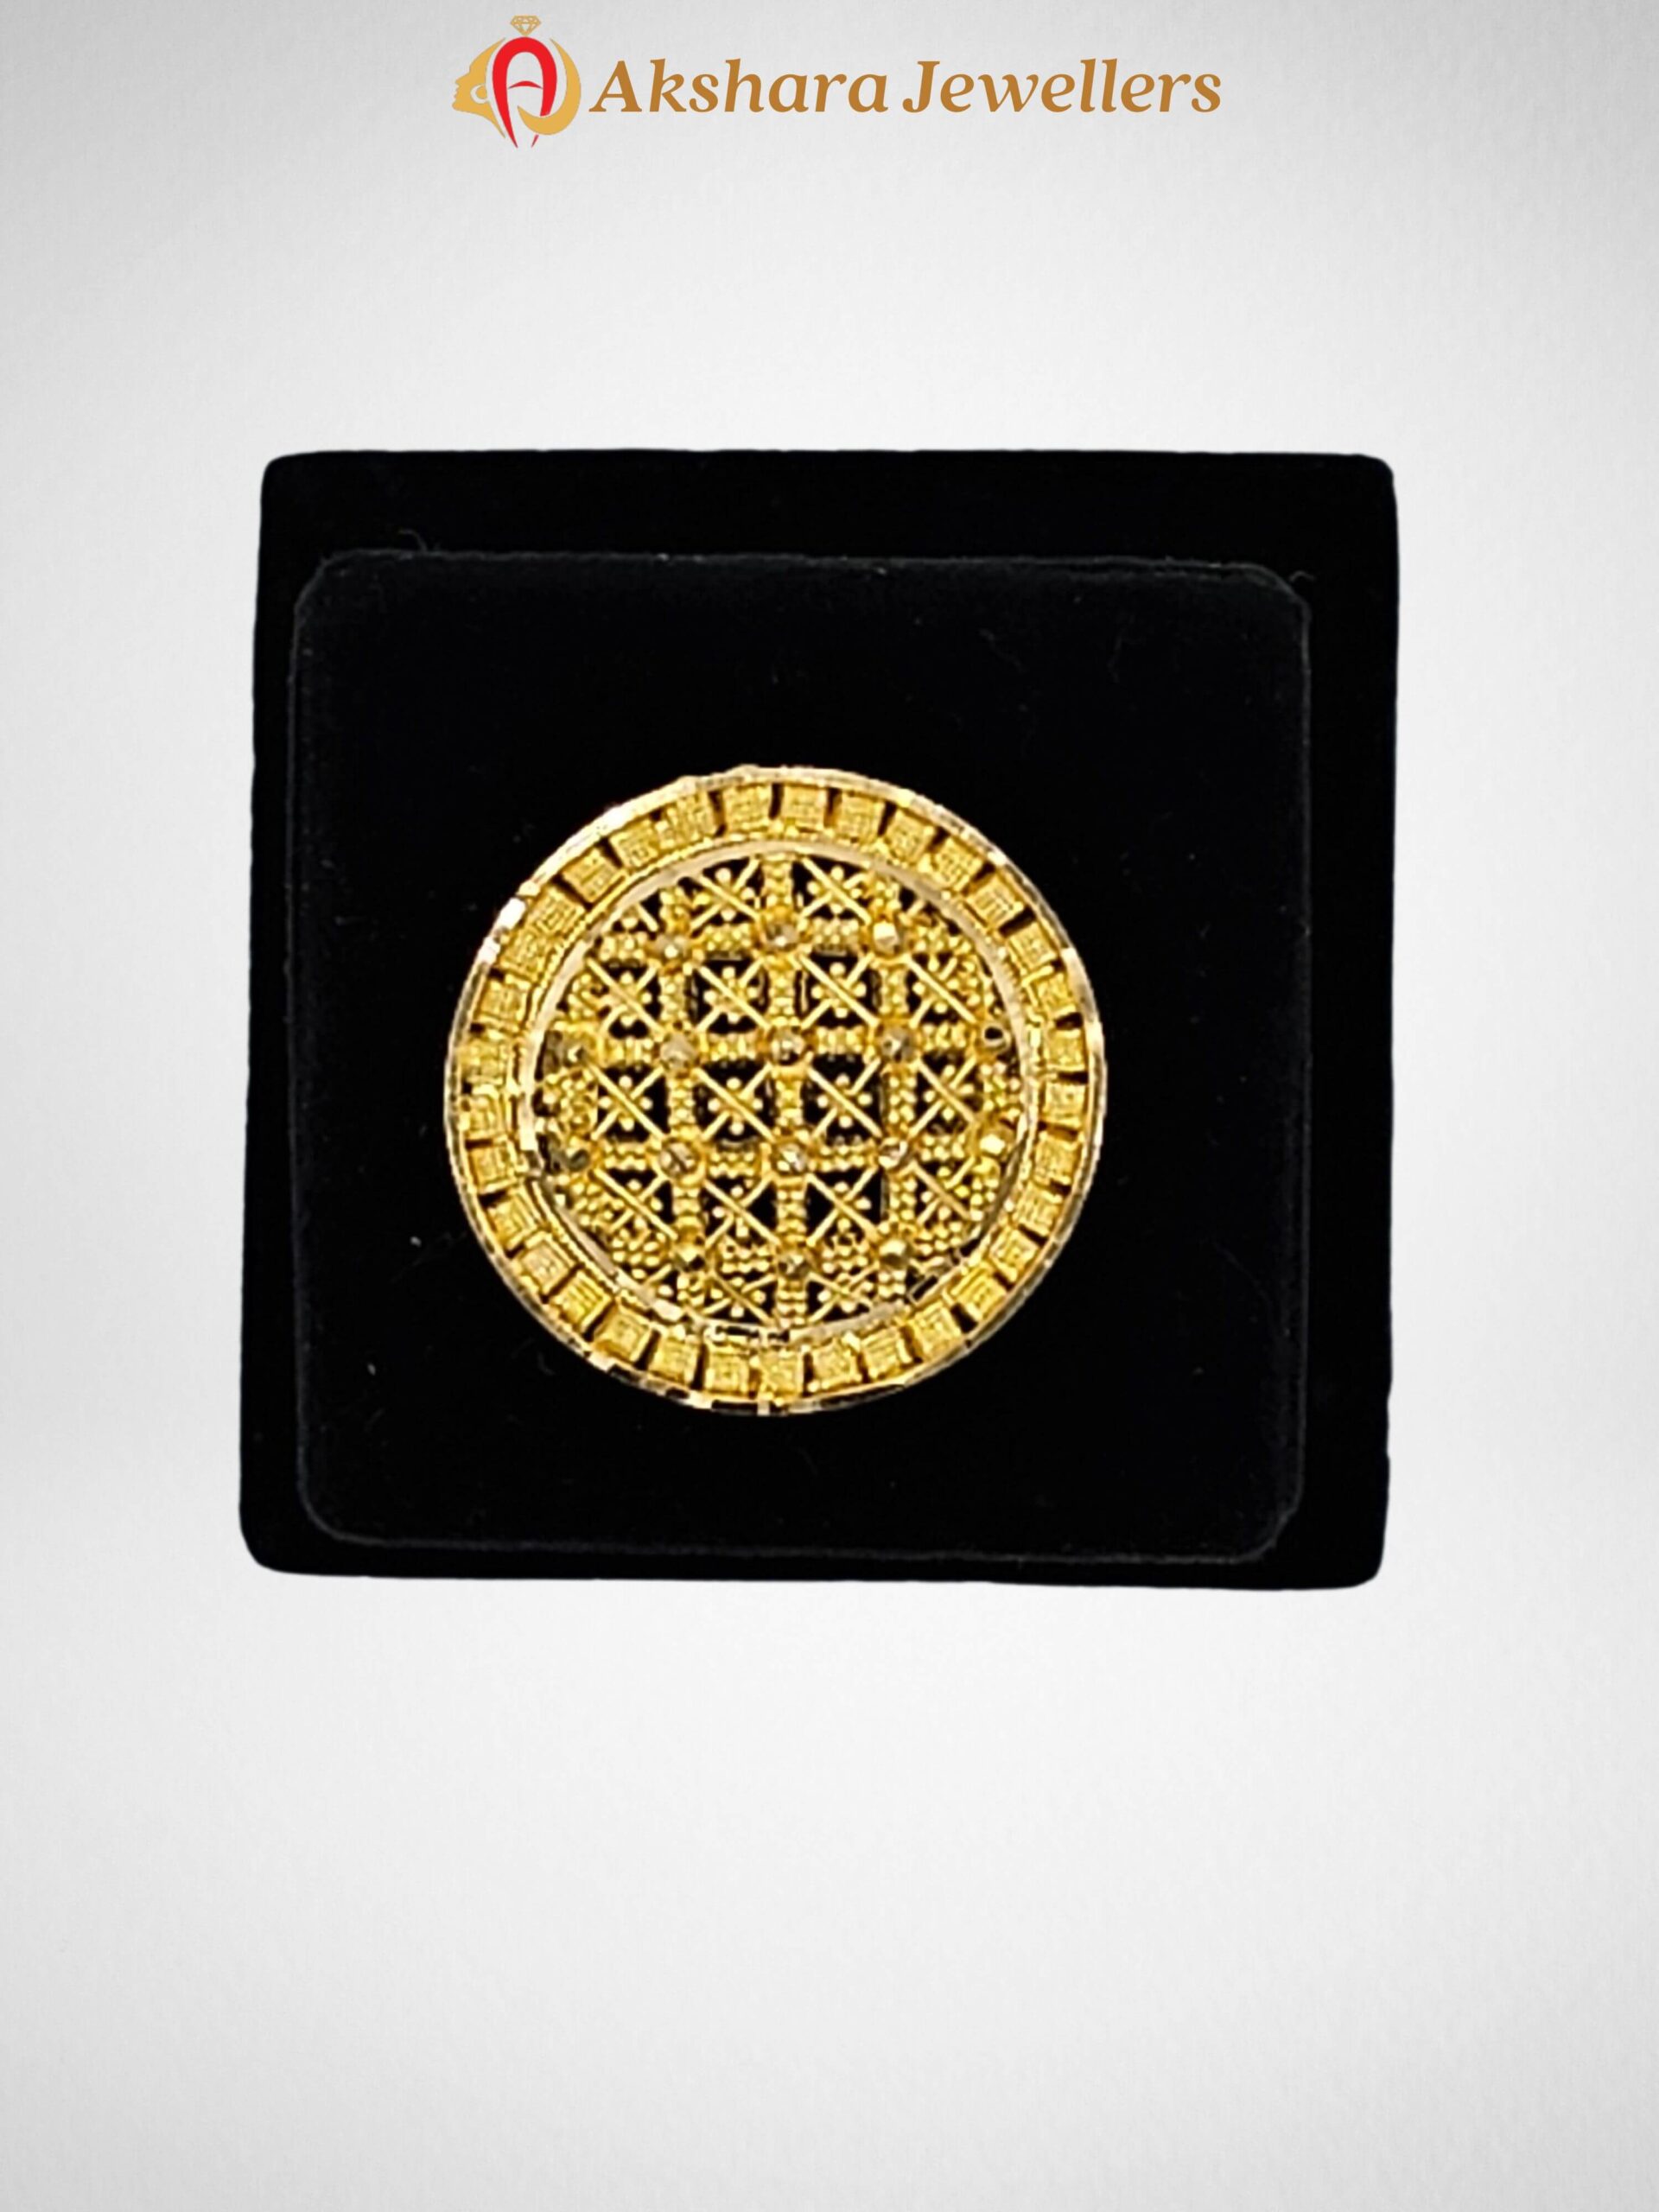 Akshara Jewellers Rings, Rings Gold design, Akshara Jewellers, Sydney Akshara Jewellers